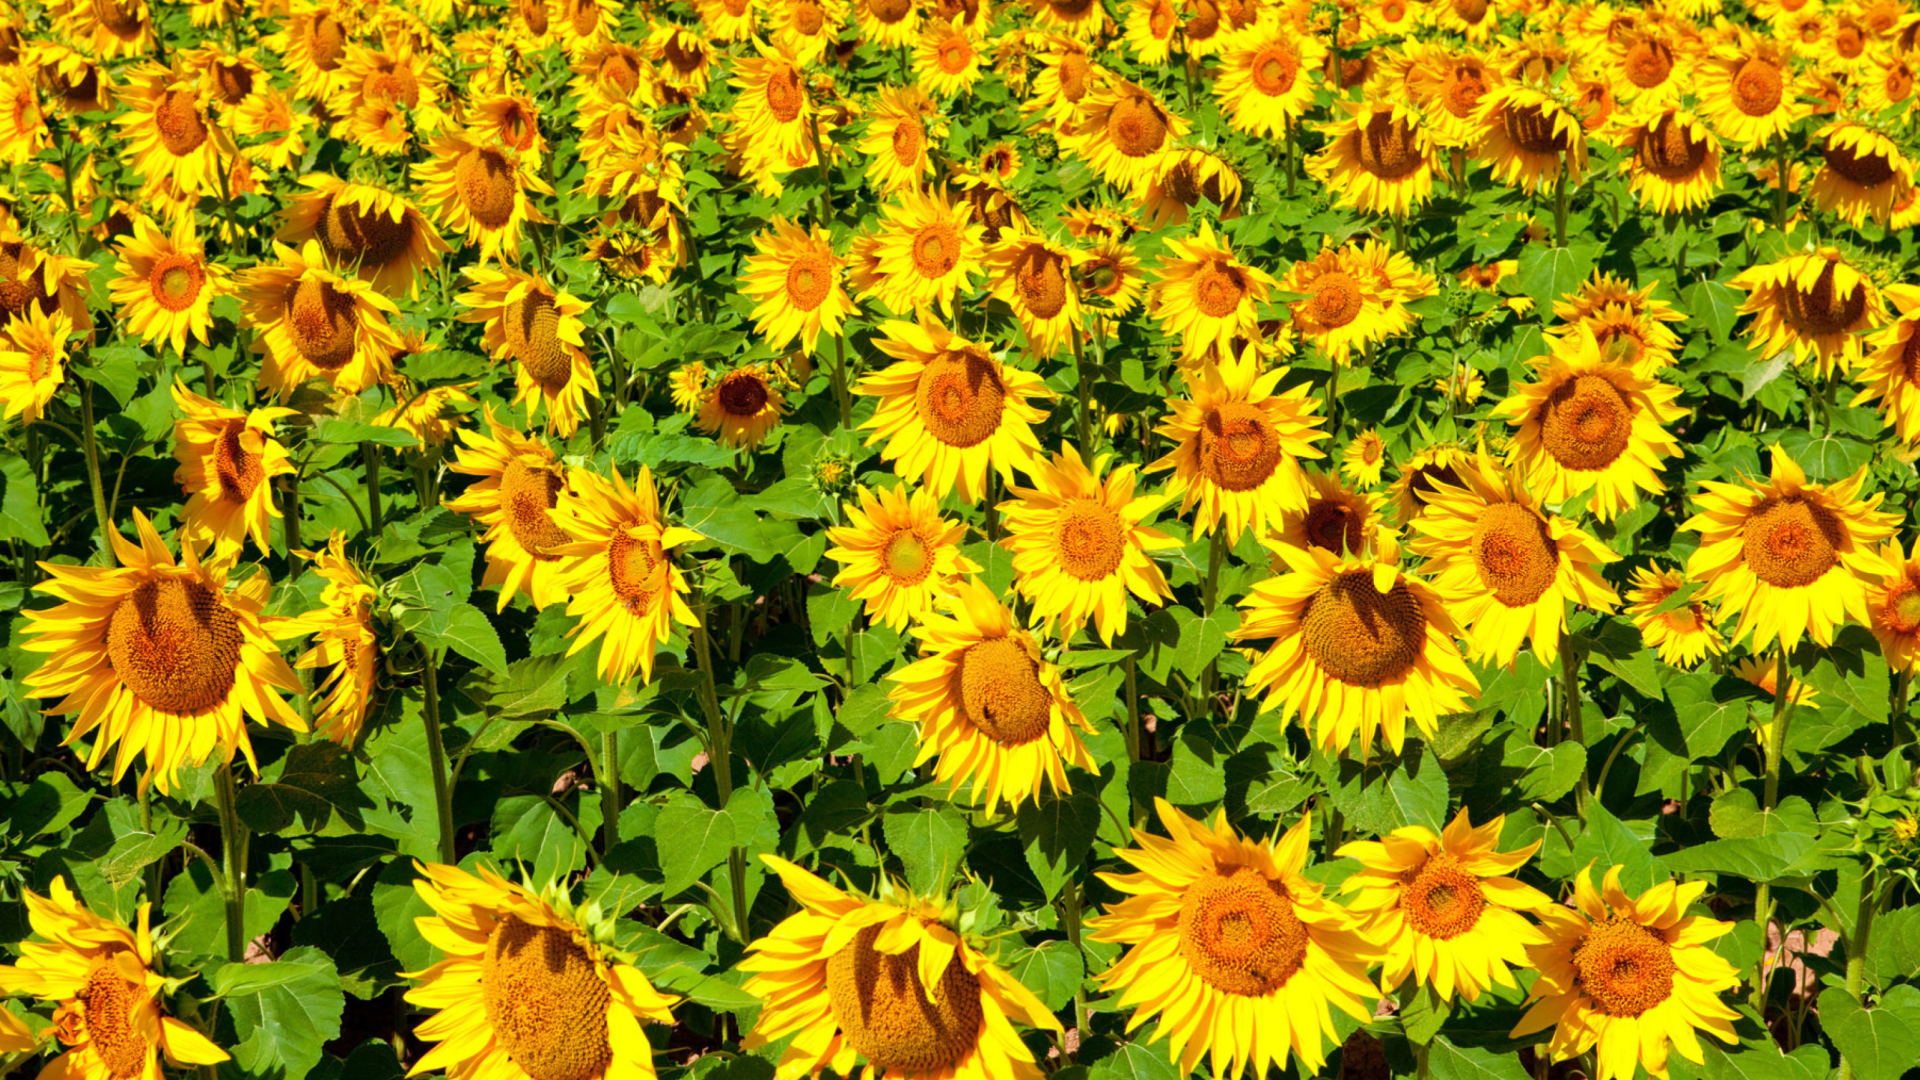 Golden Sunflower Field wallpaper 1920x1080